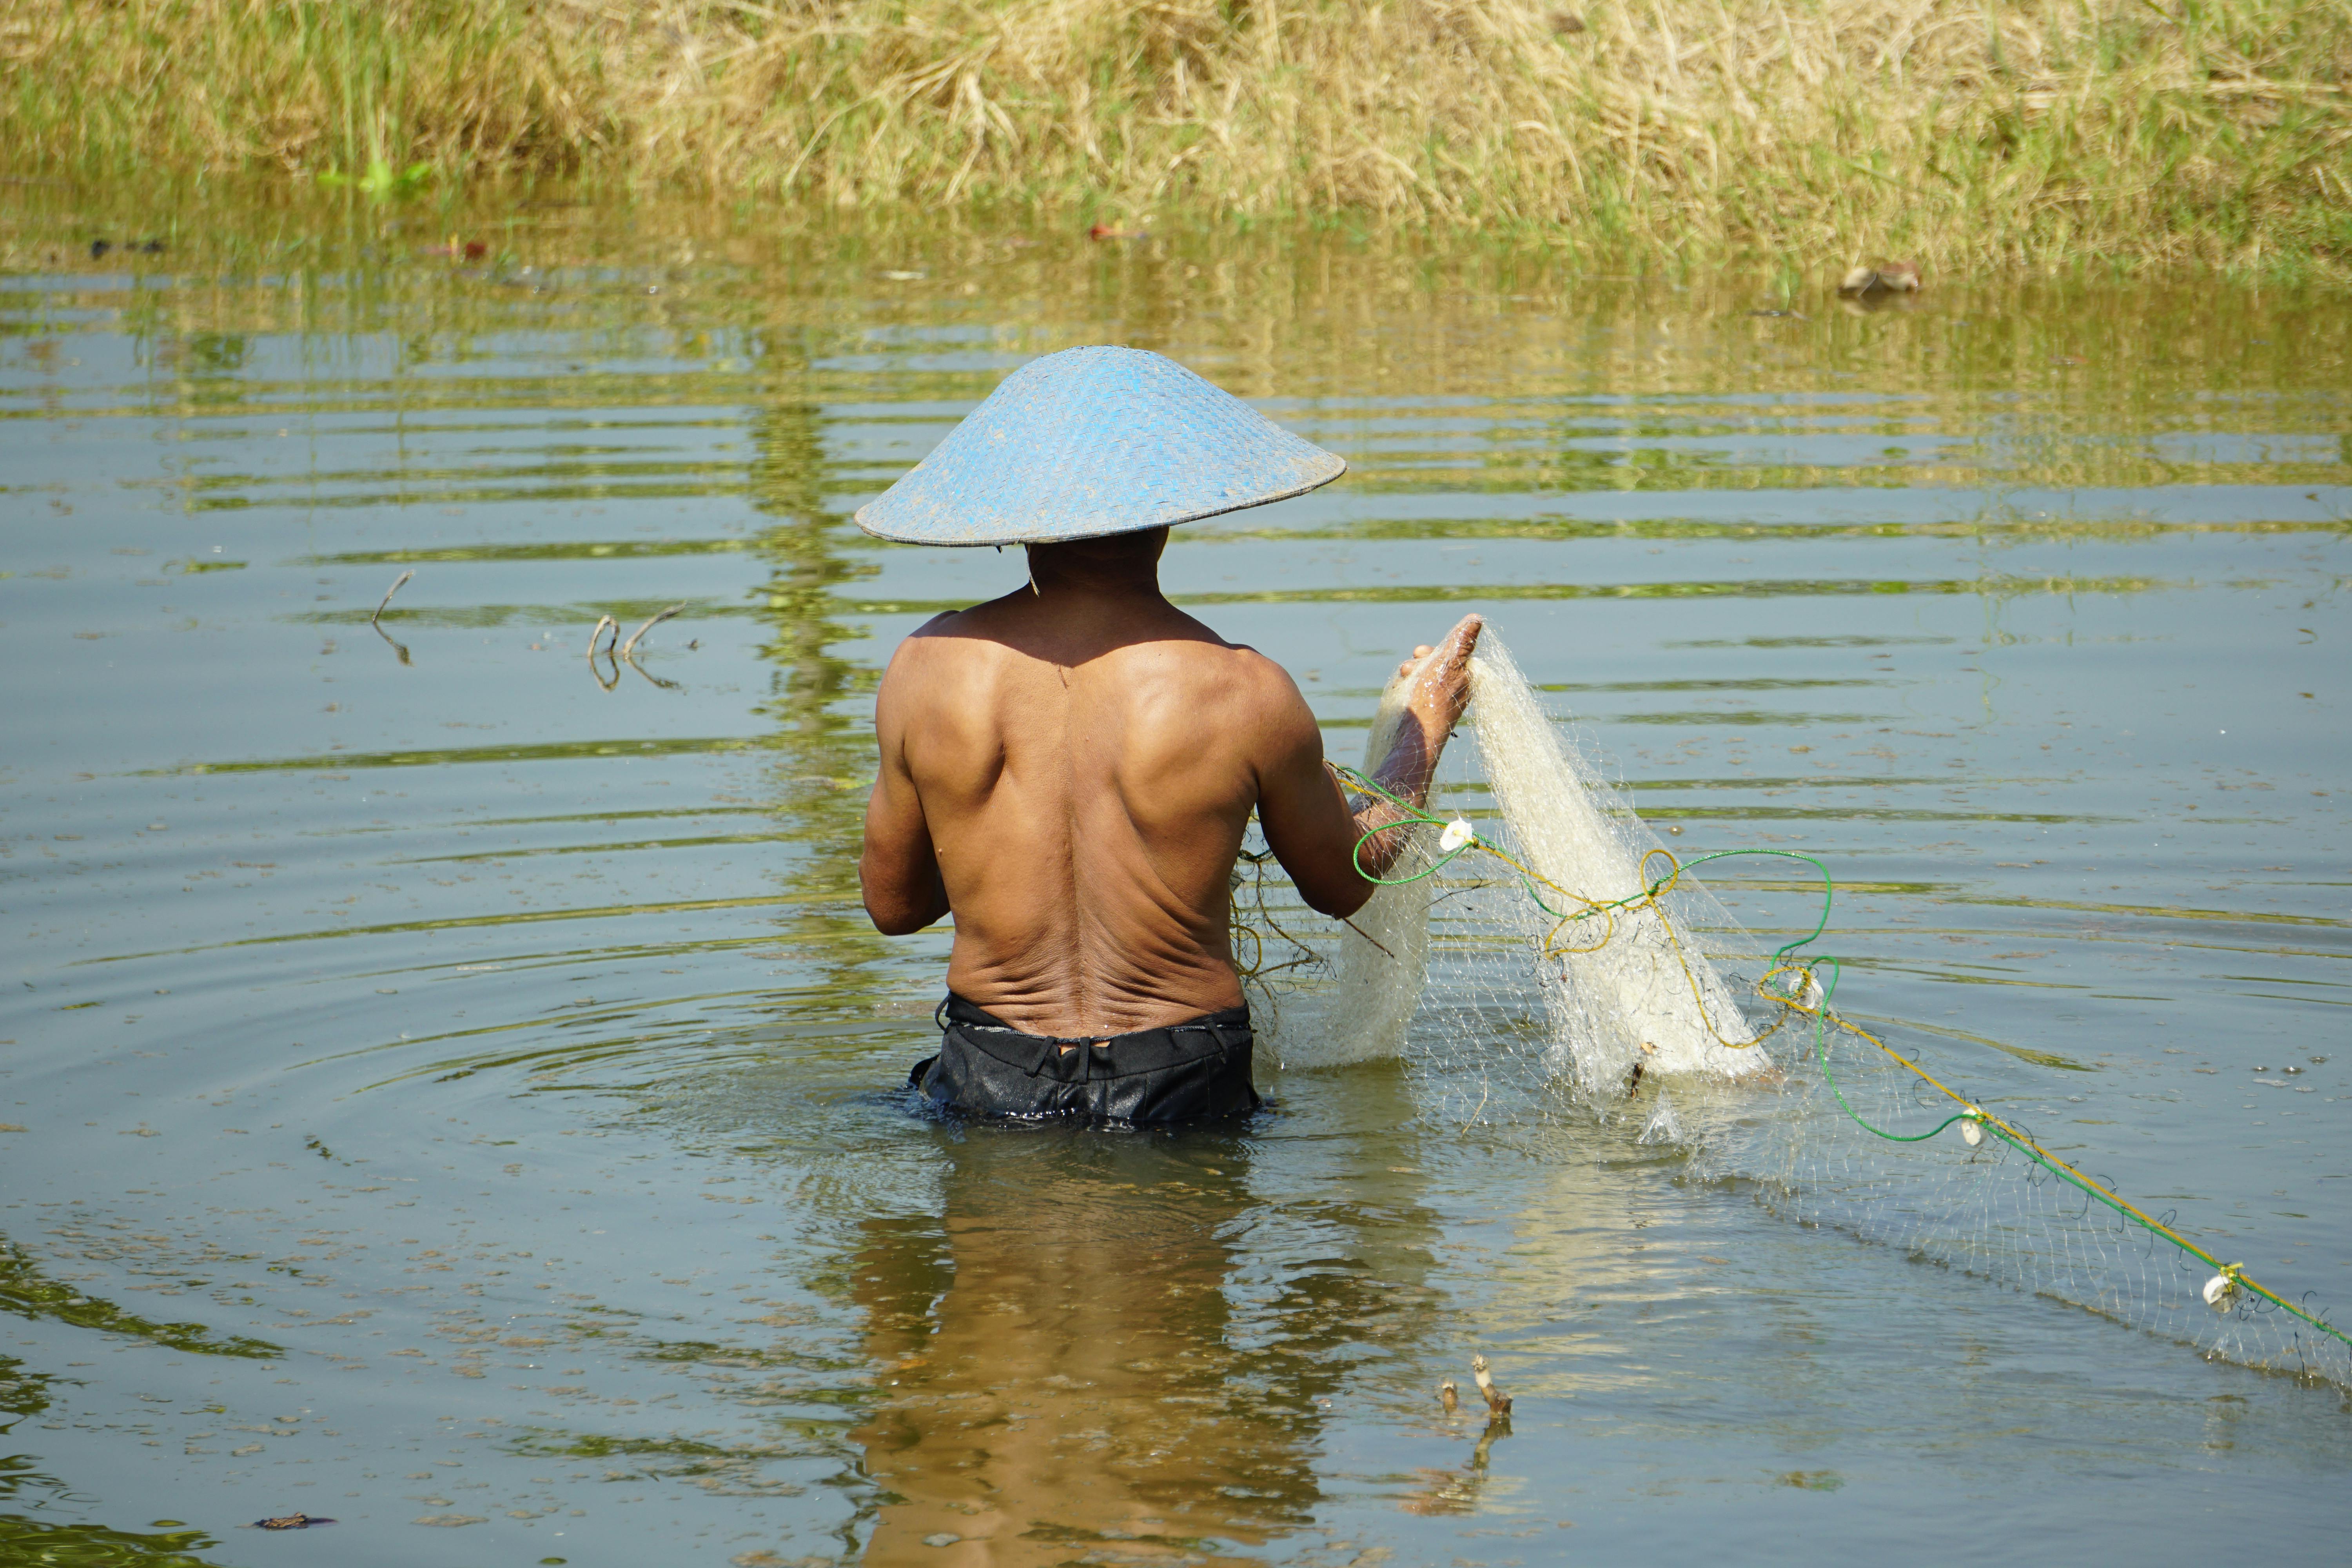 Shirtless Man Walking on Water Holding White Fish Net · Free Stock Photo